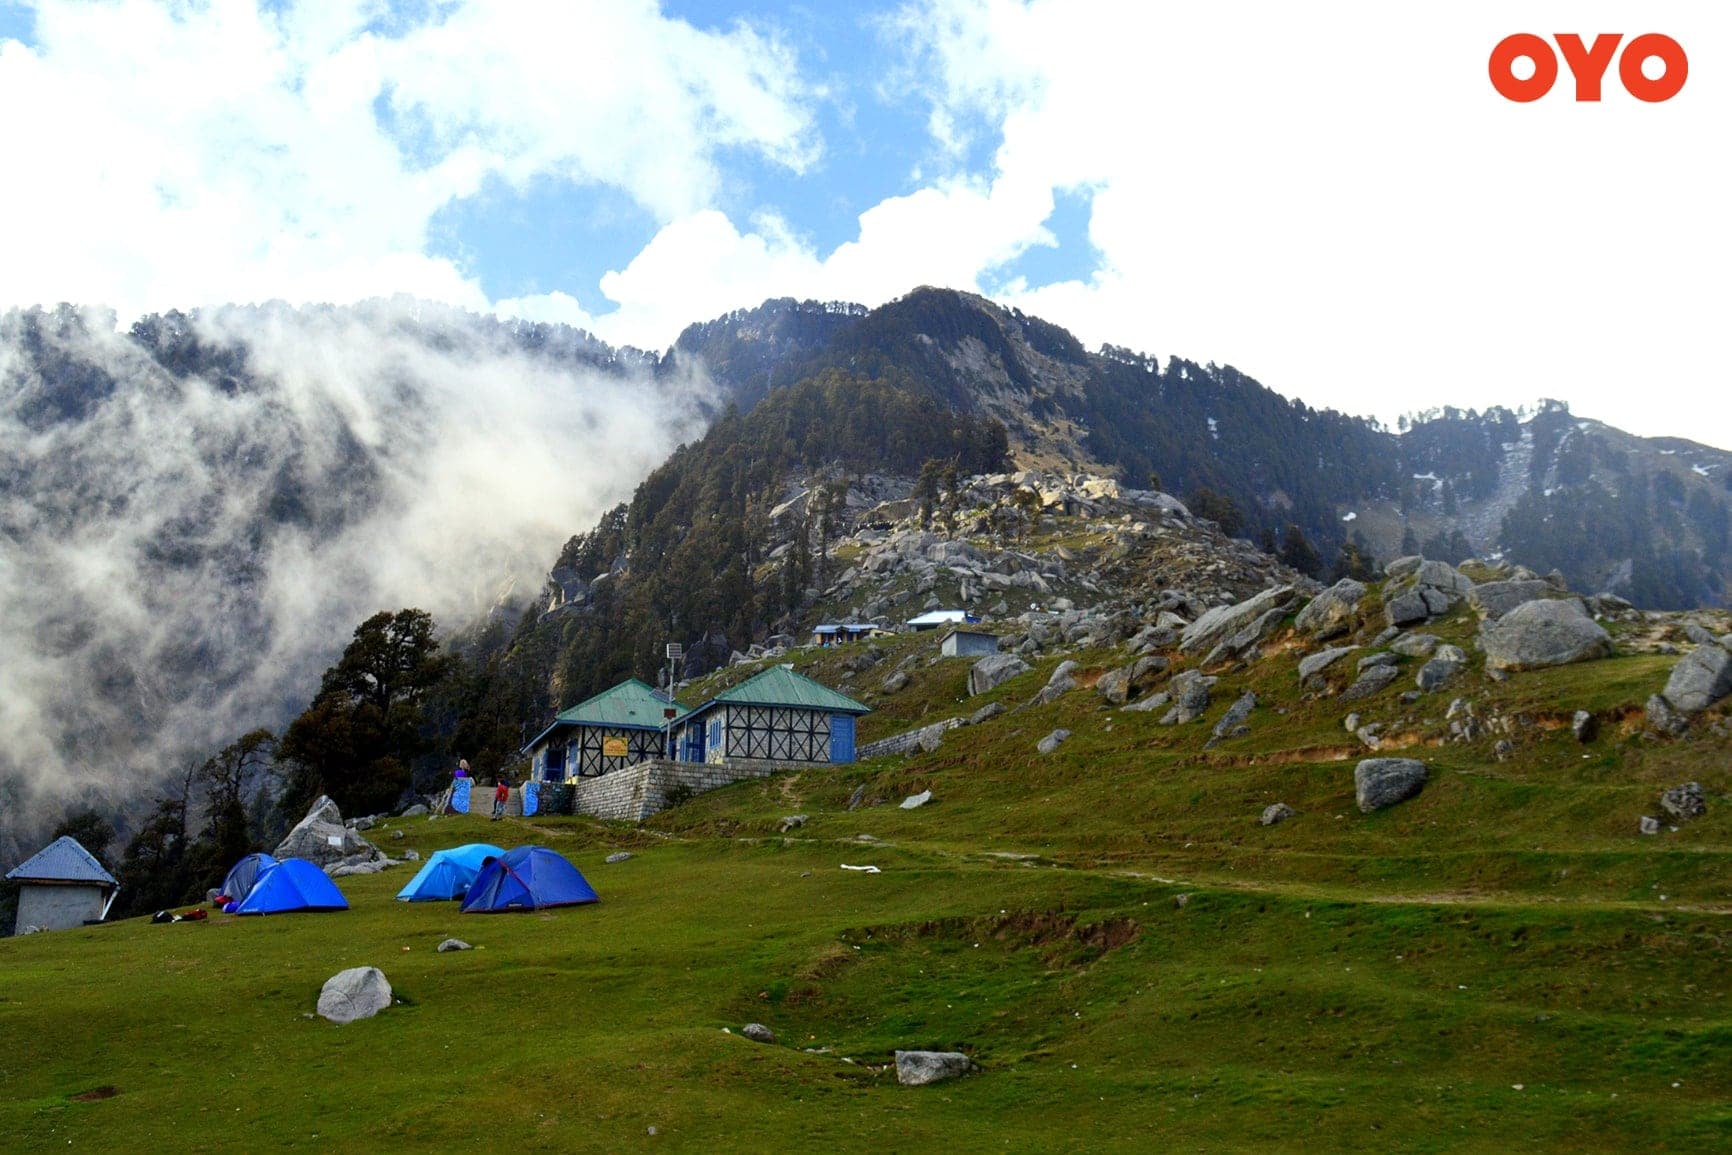 GTriund Trek - one of the best trekking destinations in India